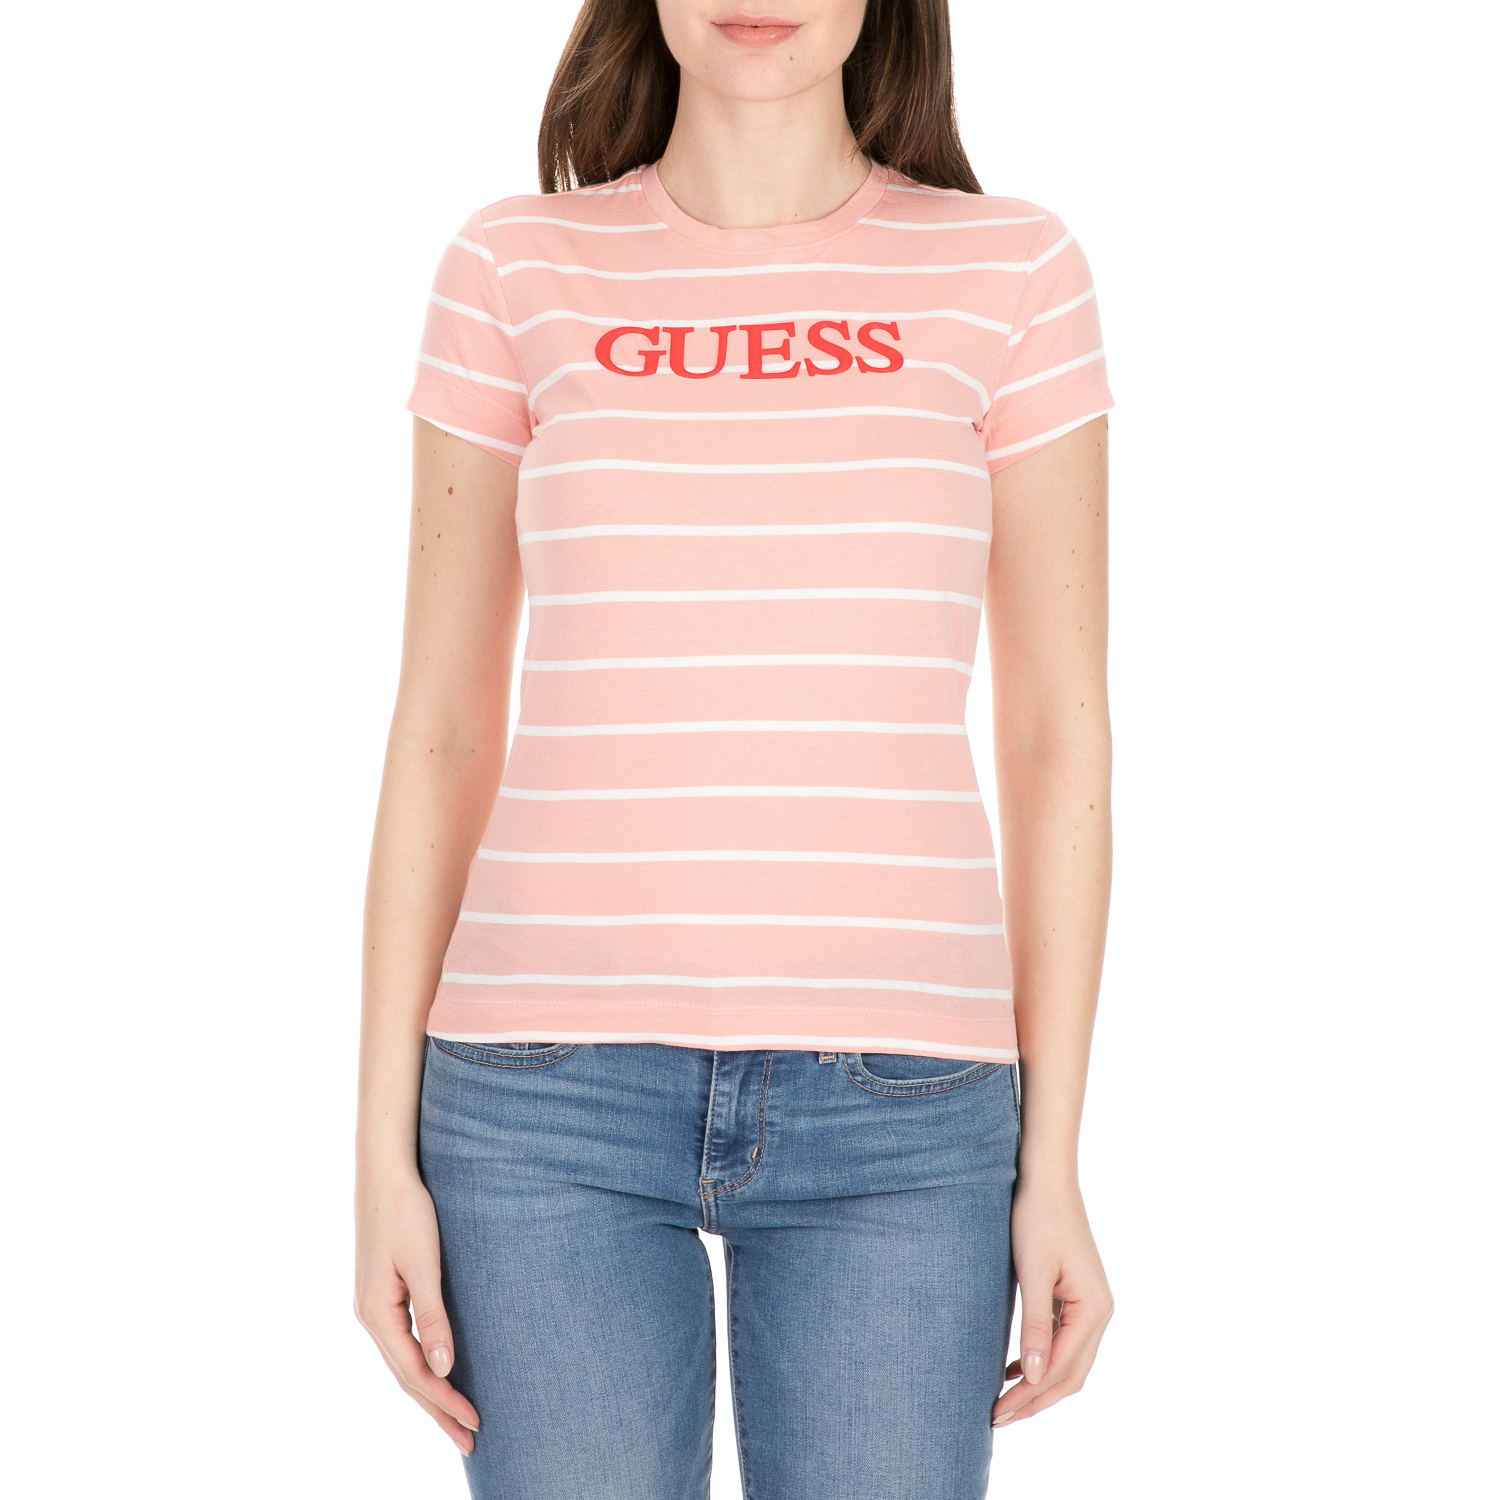 Γυναικεία/Ρούχα/Μπλούζες/Κοντομάνικες GUESS - Γυναικείο t-shirt GUESS ροζ λευκό